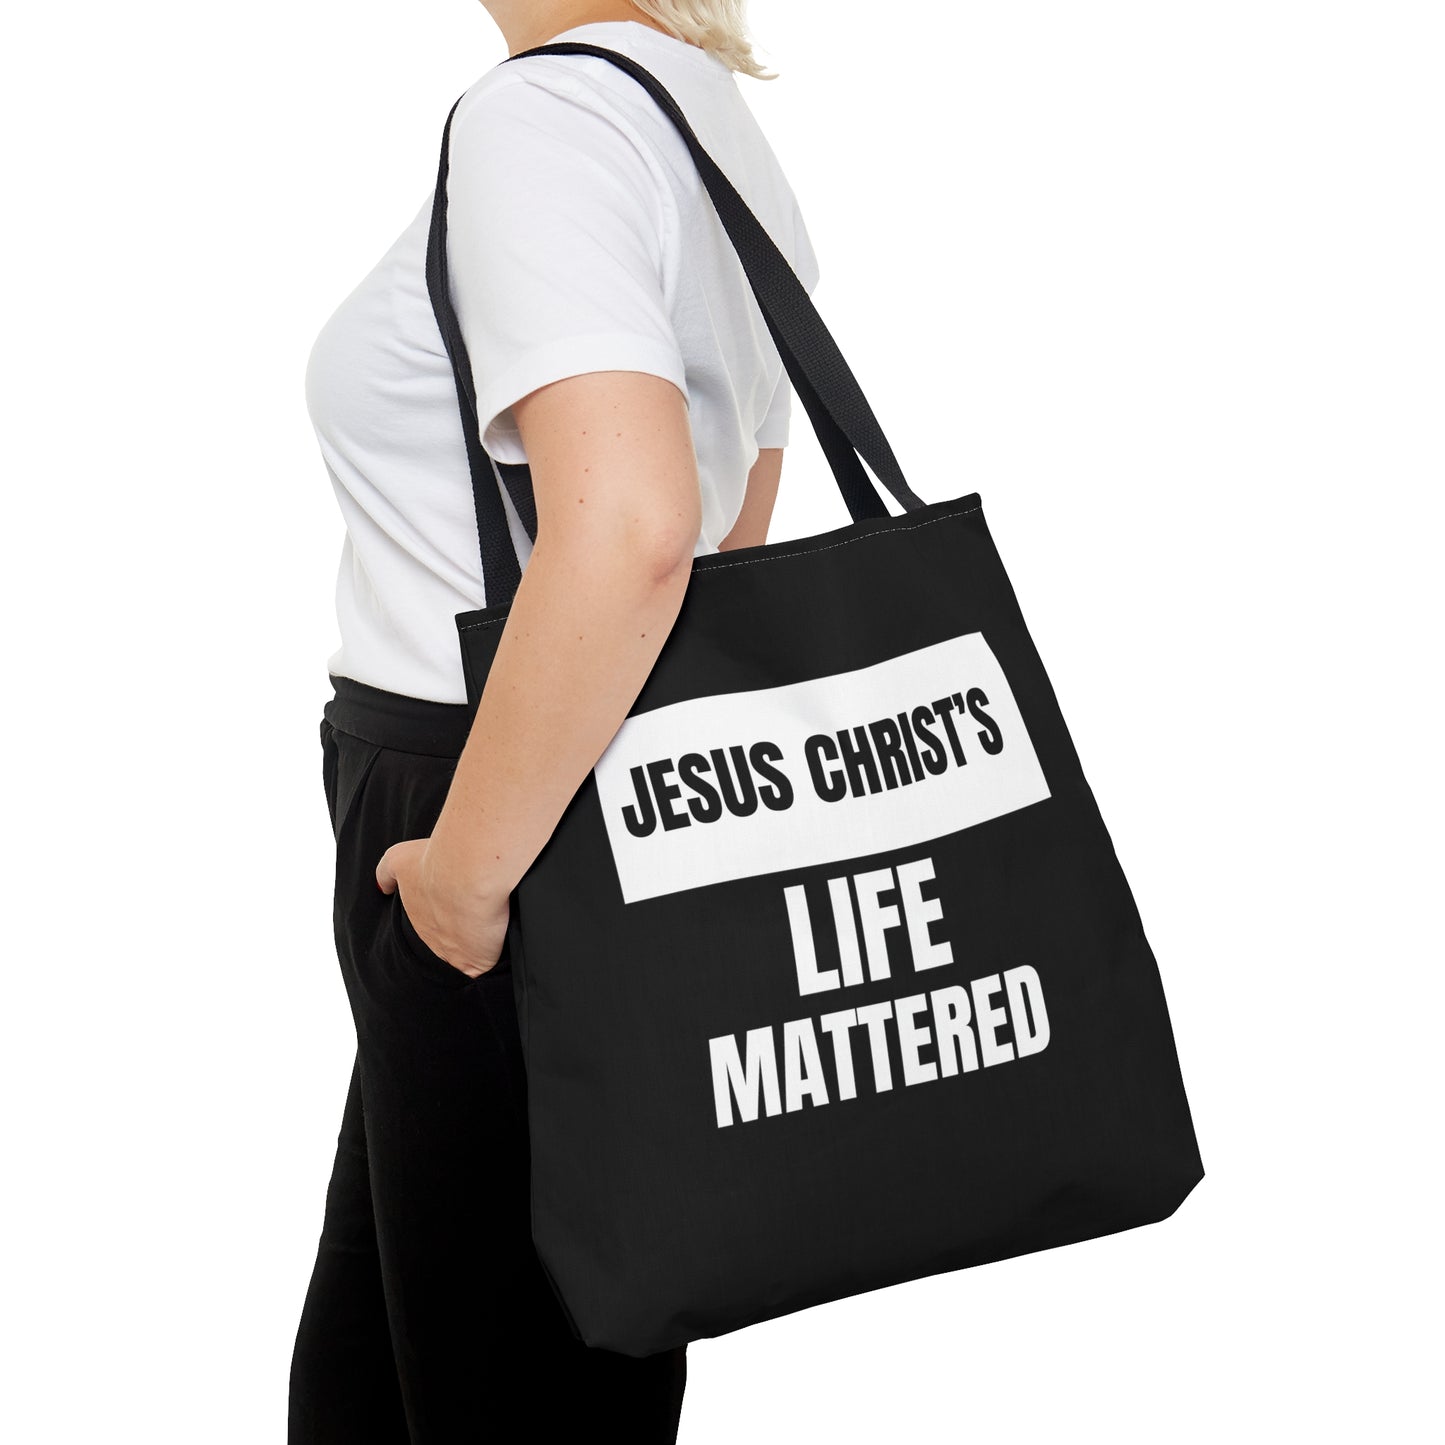 Jesus Christ's Life Mattered Christian Tote Bag Printify